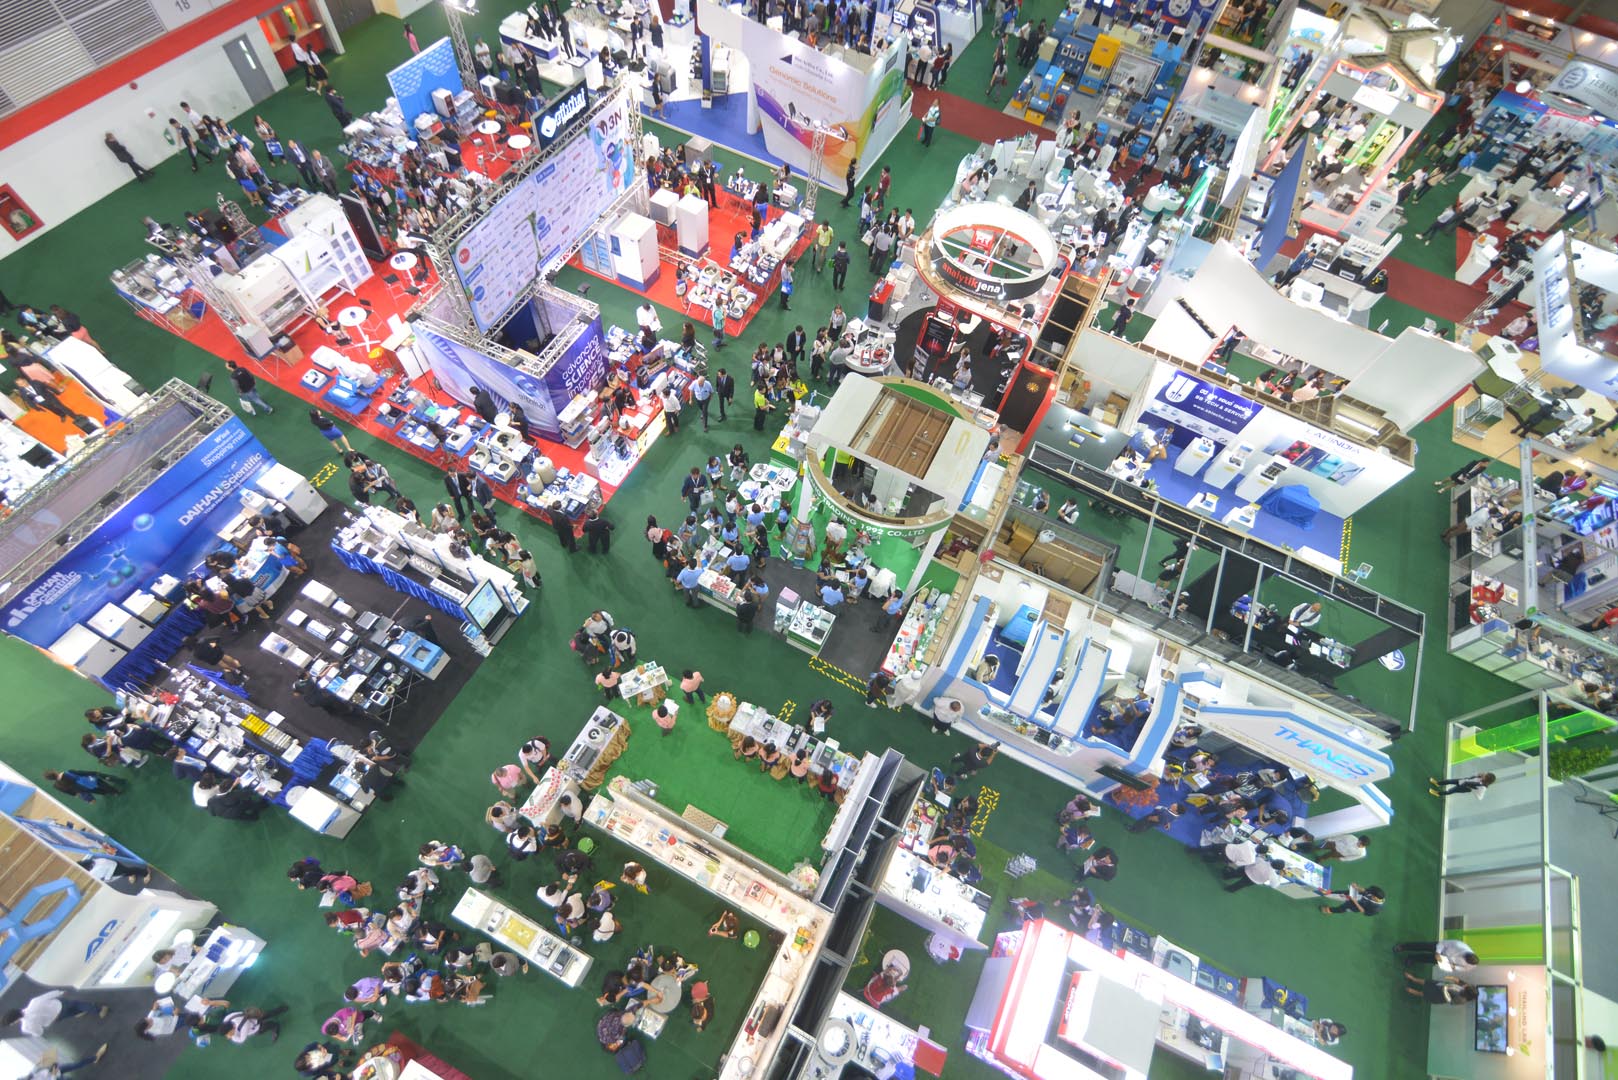 Hội chợ Triển lãm Quốc tế Bangkok (BITEC)